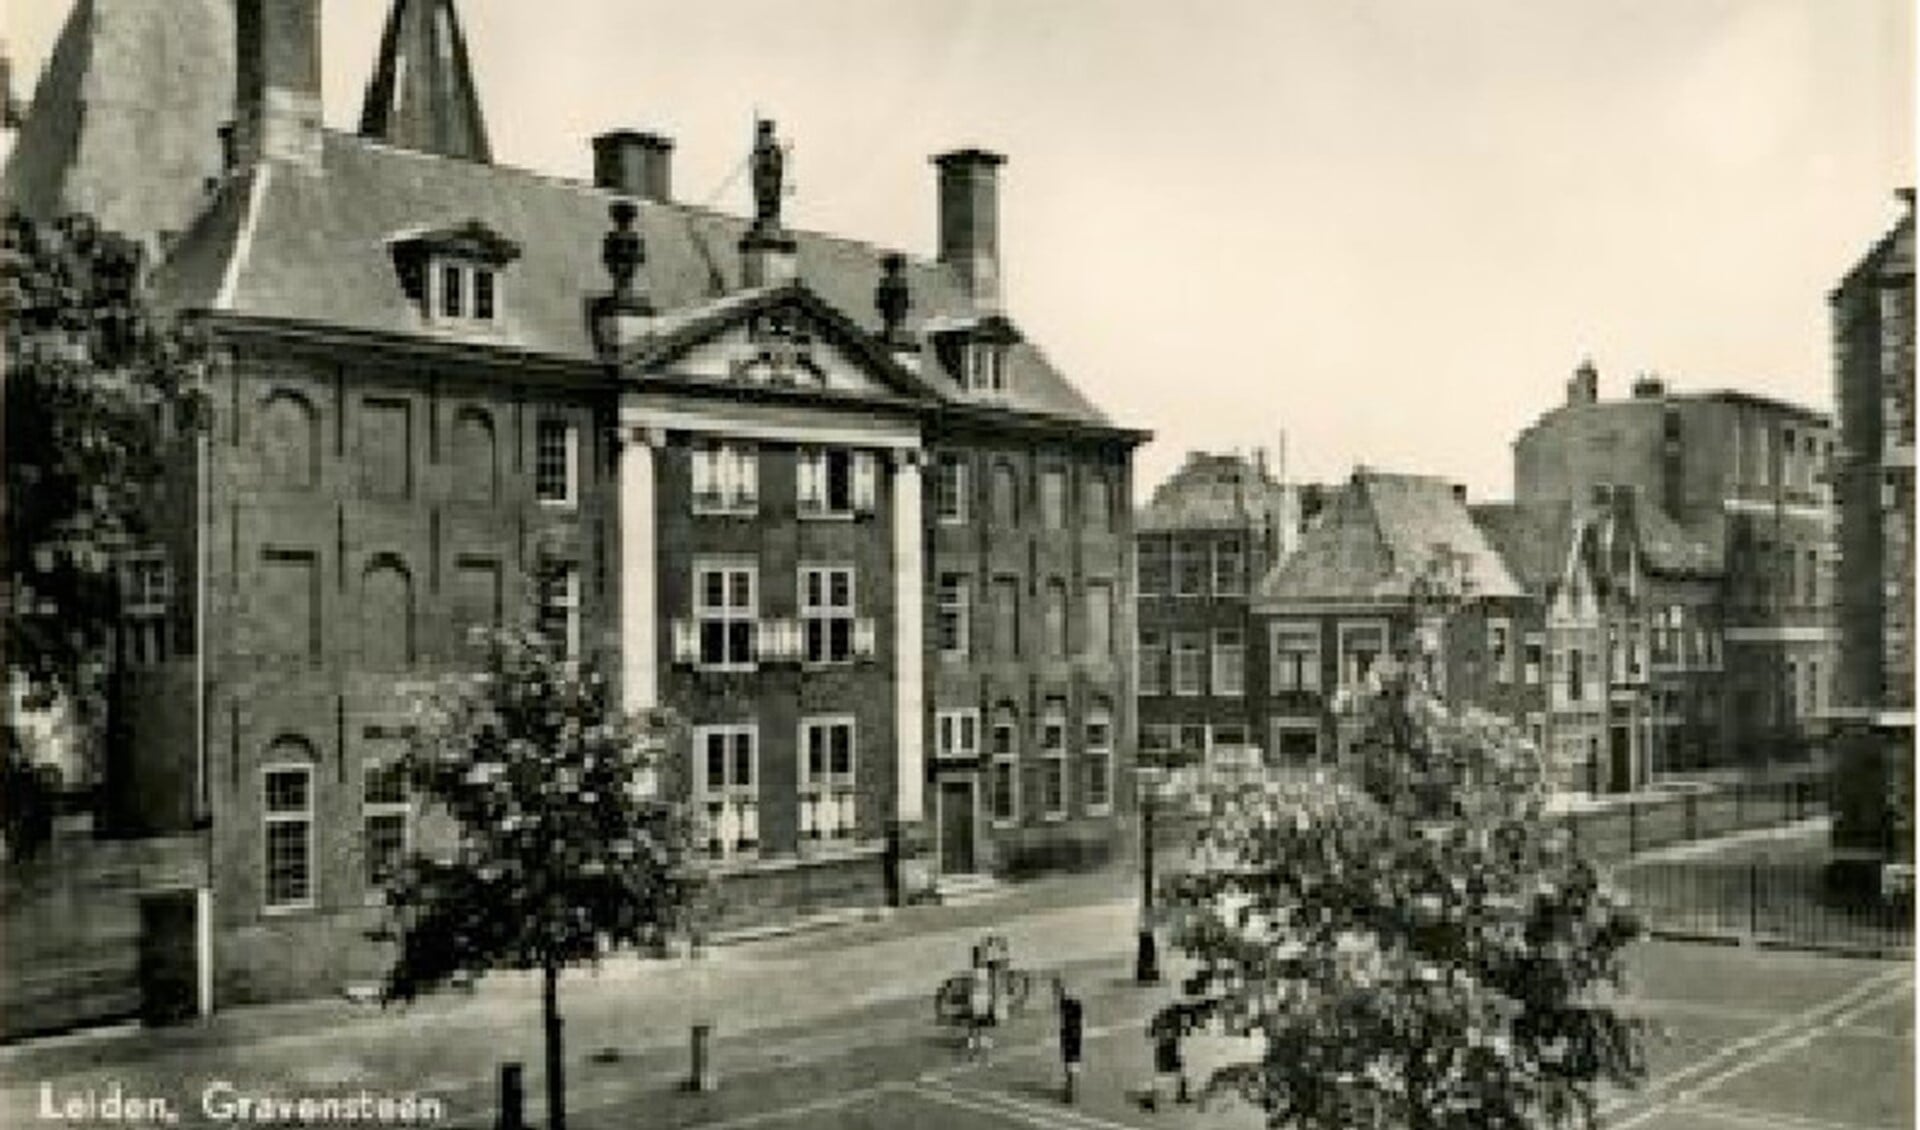 Rous werd naar Leiden gebracht en ingesloten op het Gravensteen, zoals de gevangenis daar heette.